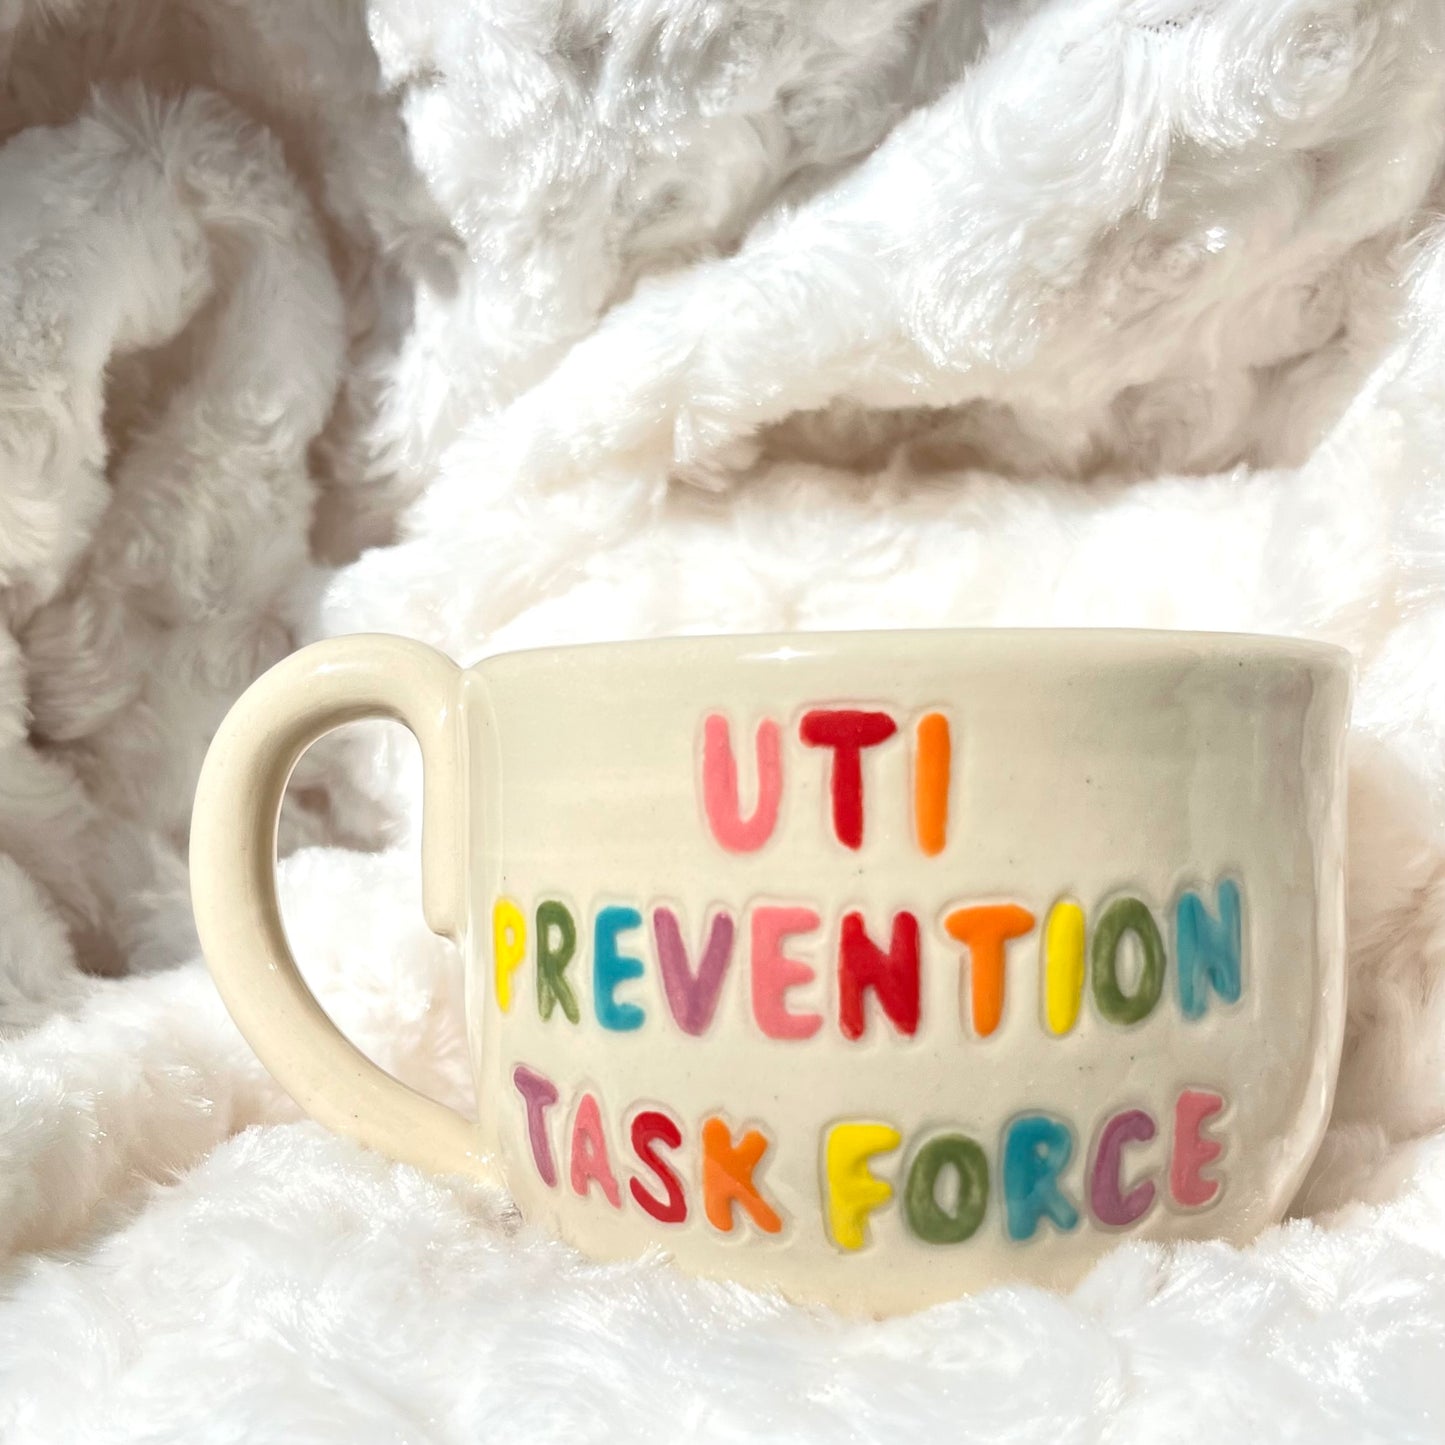 UTI Prevention Task Force Mug